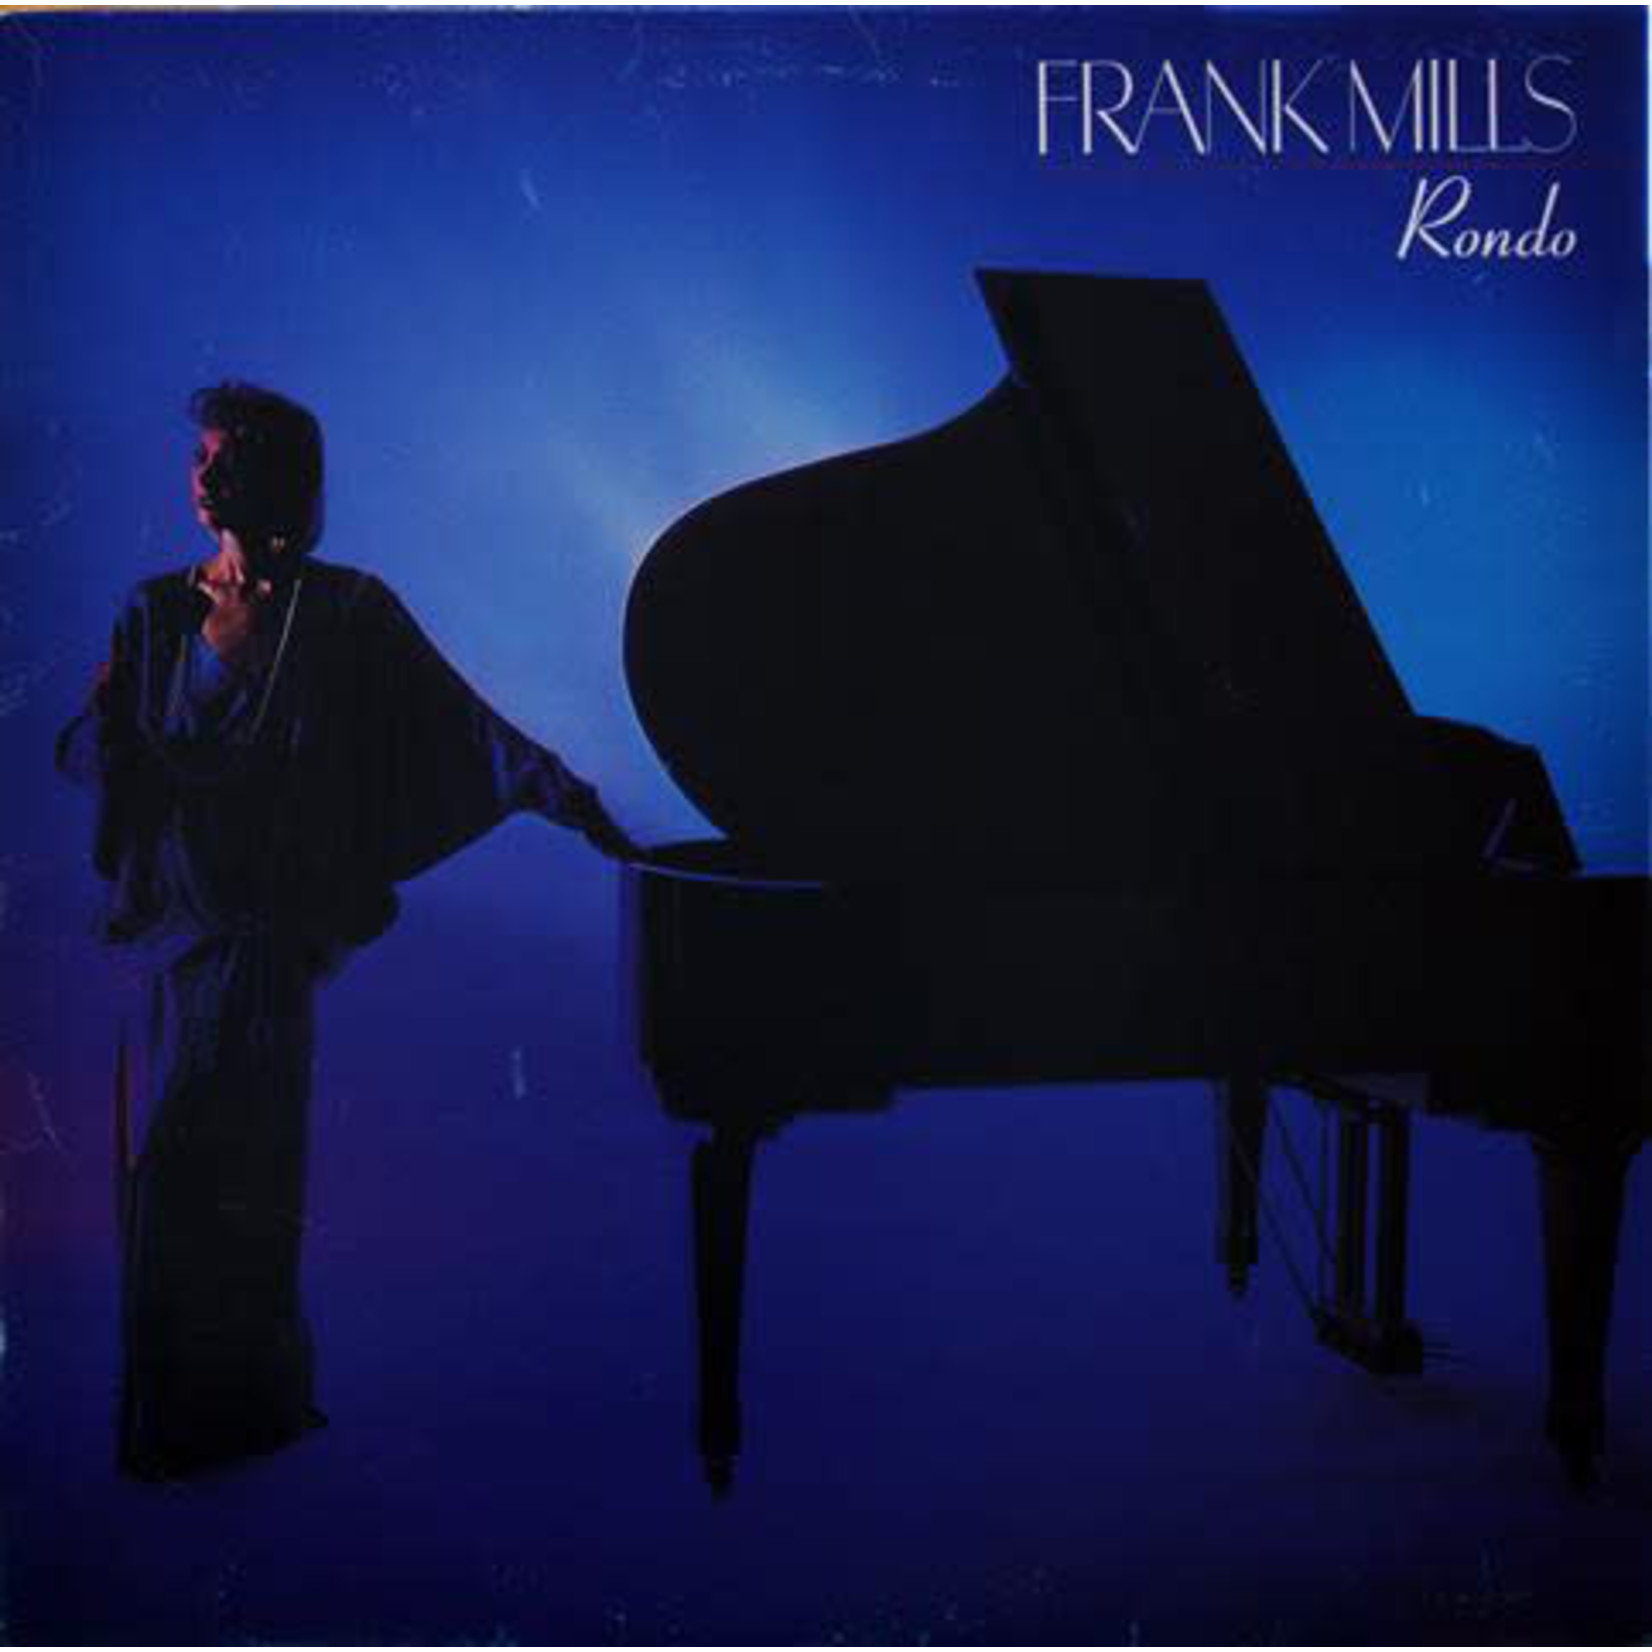 Frank Mills Frank Mills – Rondo (VG, 1982, LP, Capitol Records – ST 6496, Canada)